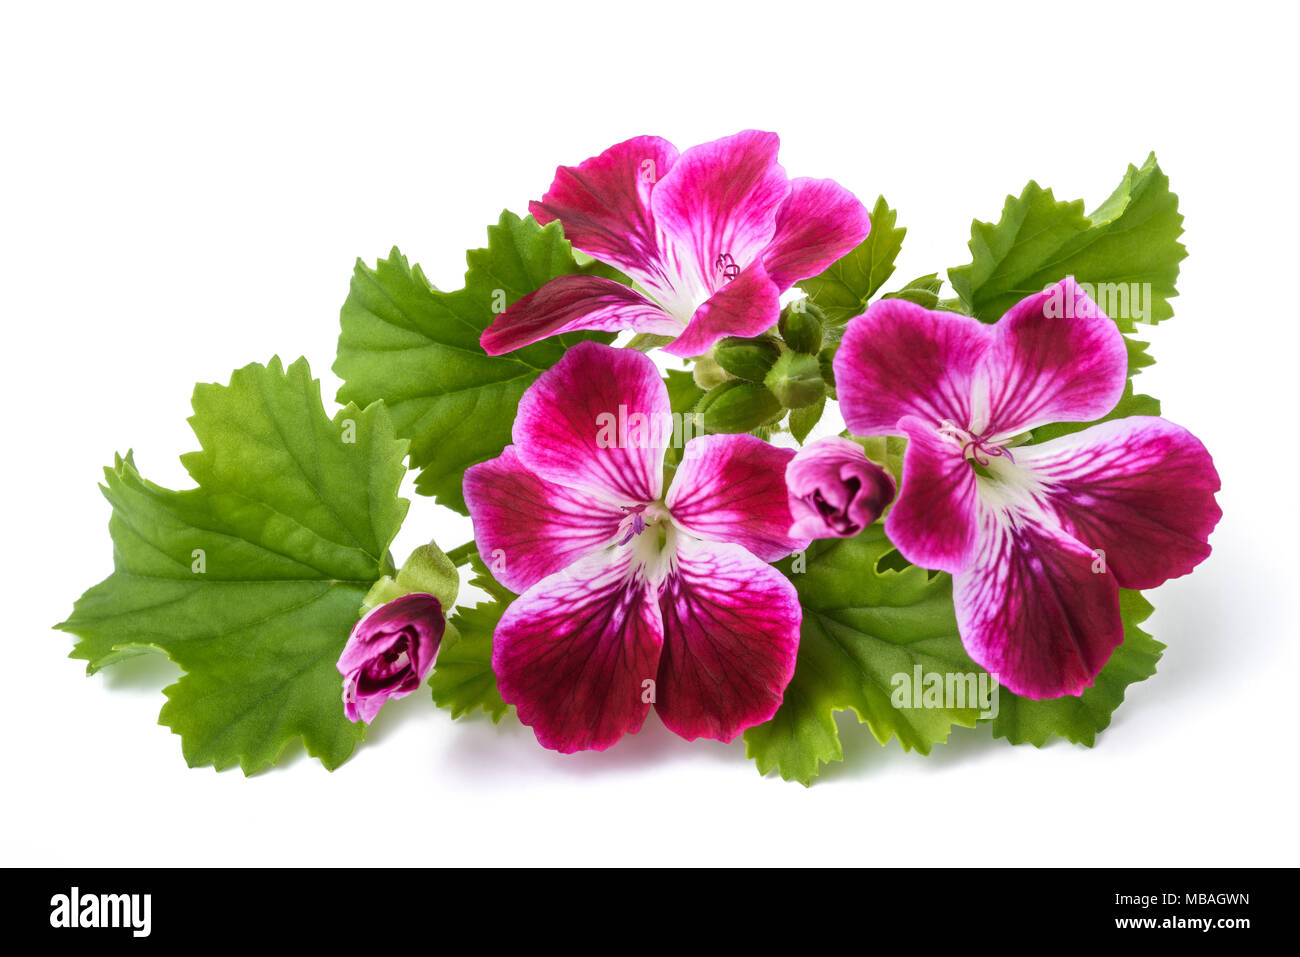 Geranium flowers isolated on white background Stock Photo